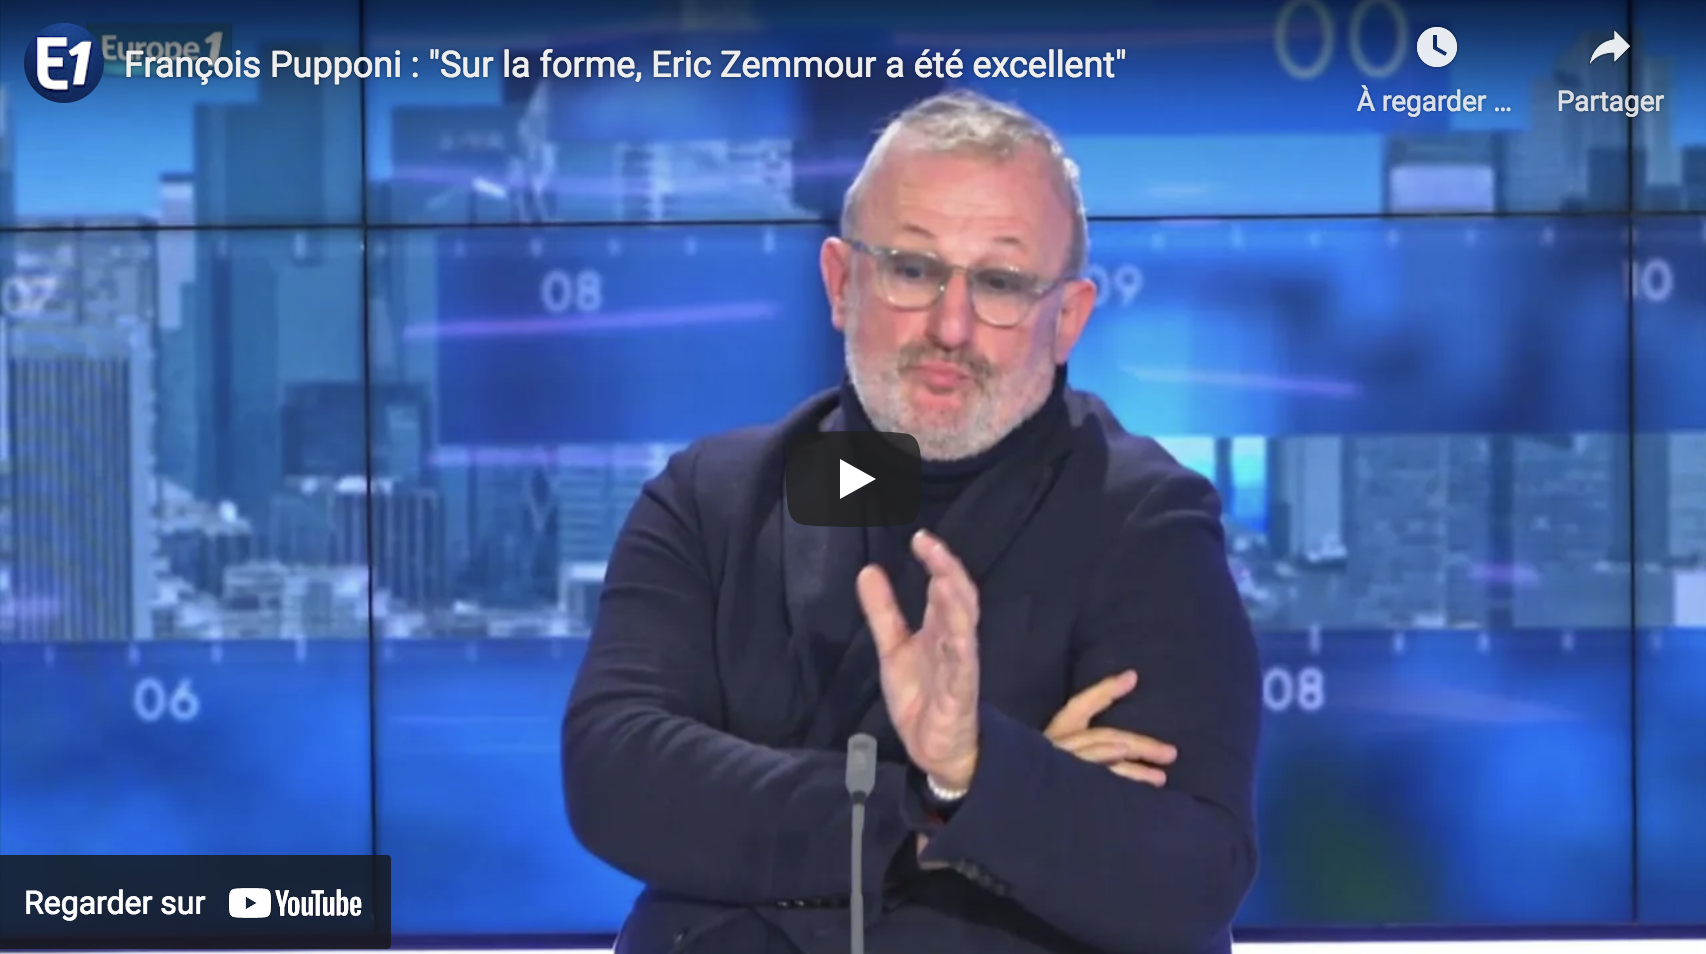 François Pupponi à propos du meeting de Villepinte : “Sur la forme, Eric Zemmour a été excellent” (VIDÉO)